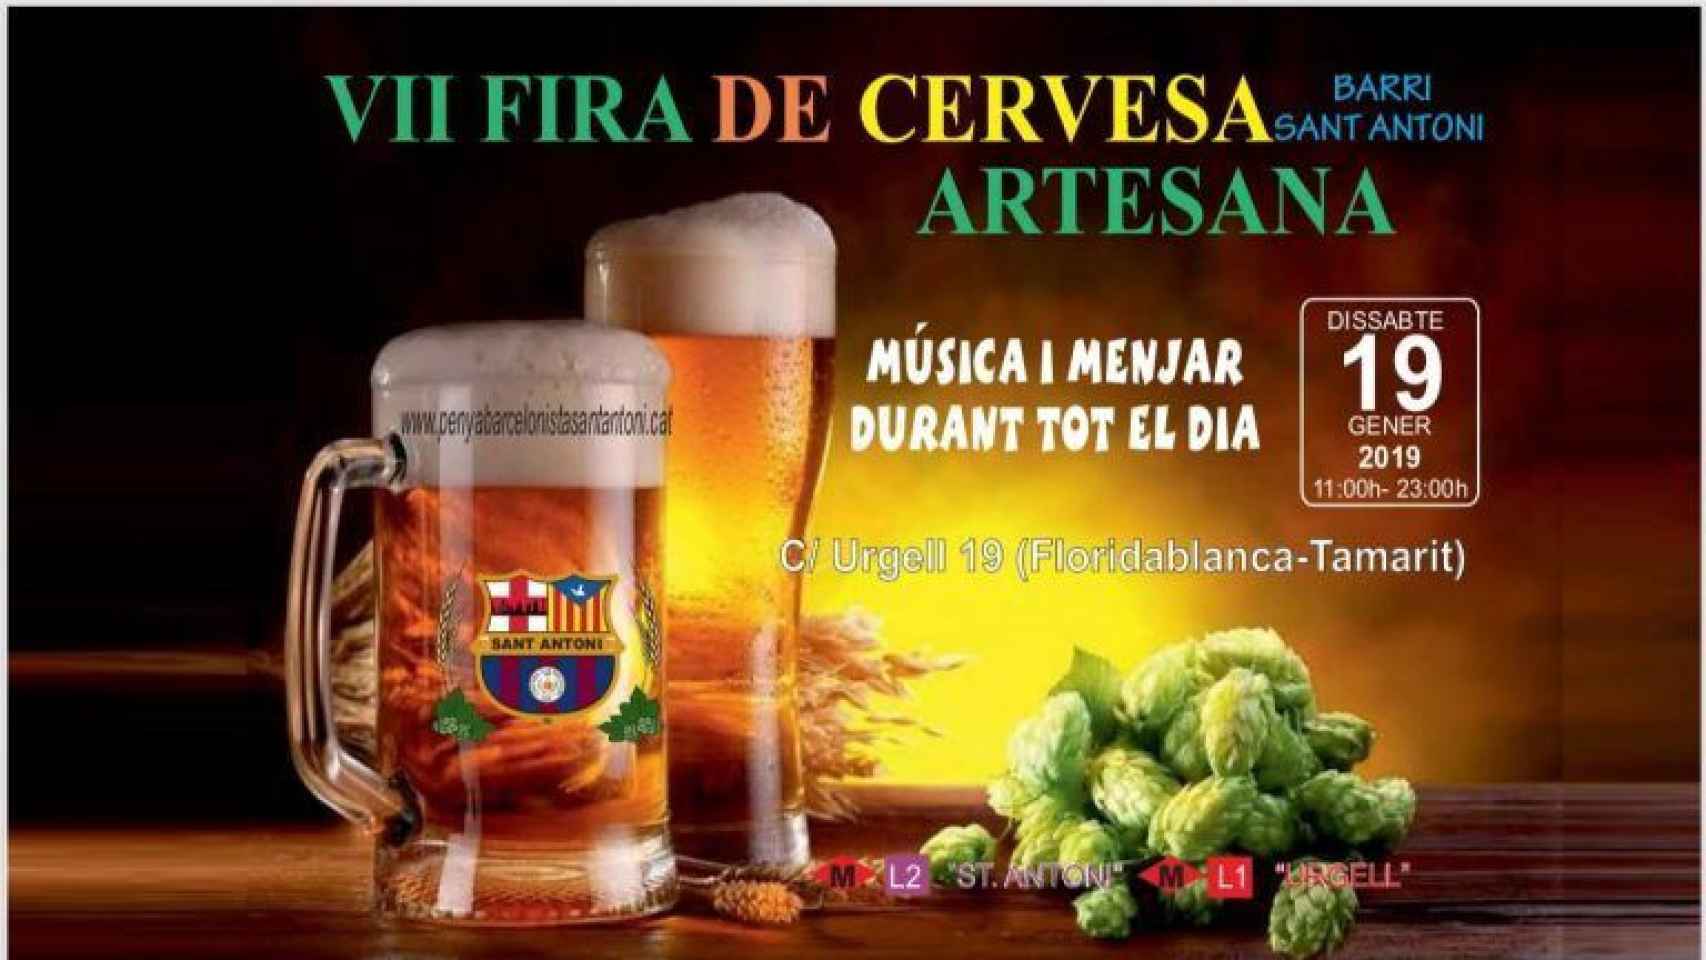 Cartel de la Fira de Cervesa Artesana de Sant Antoni